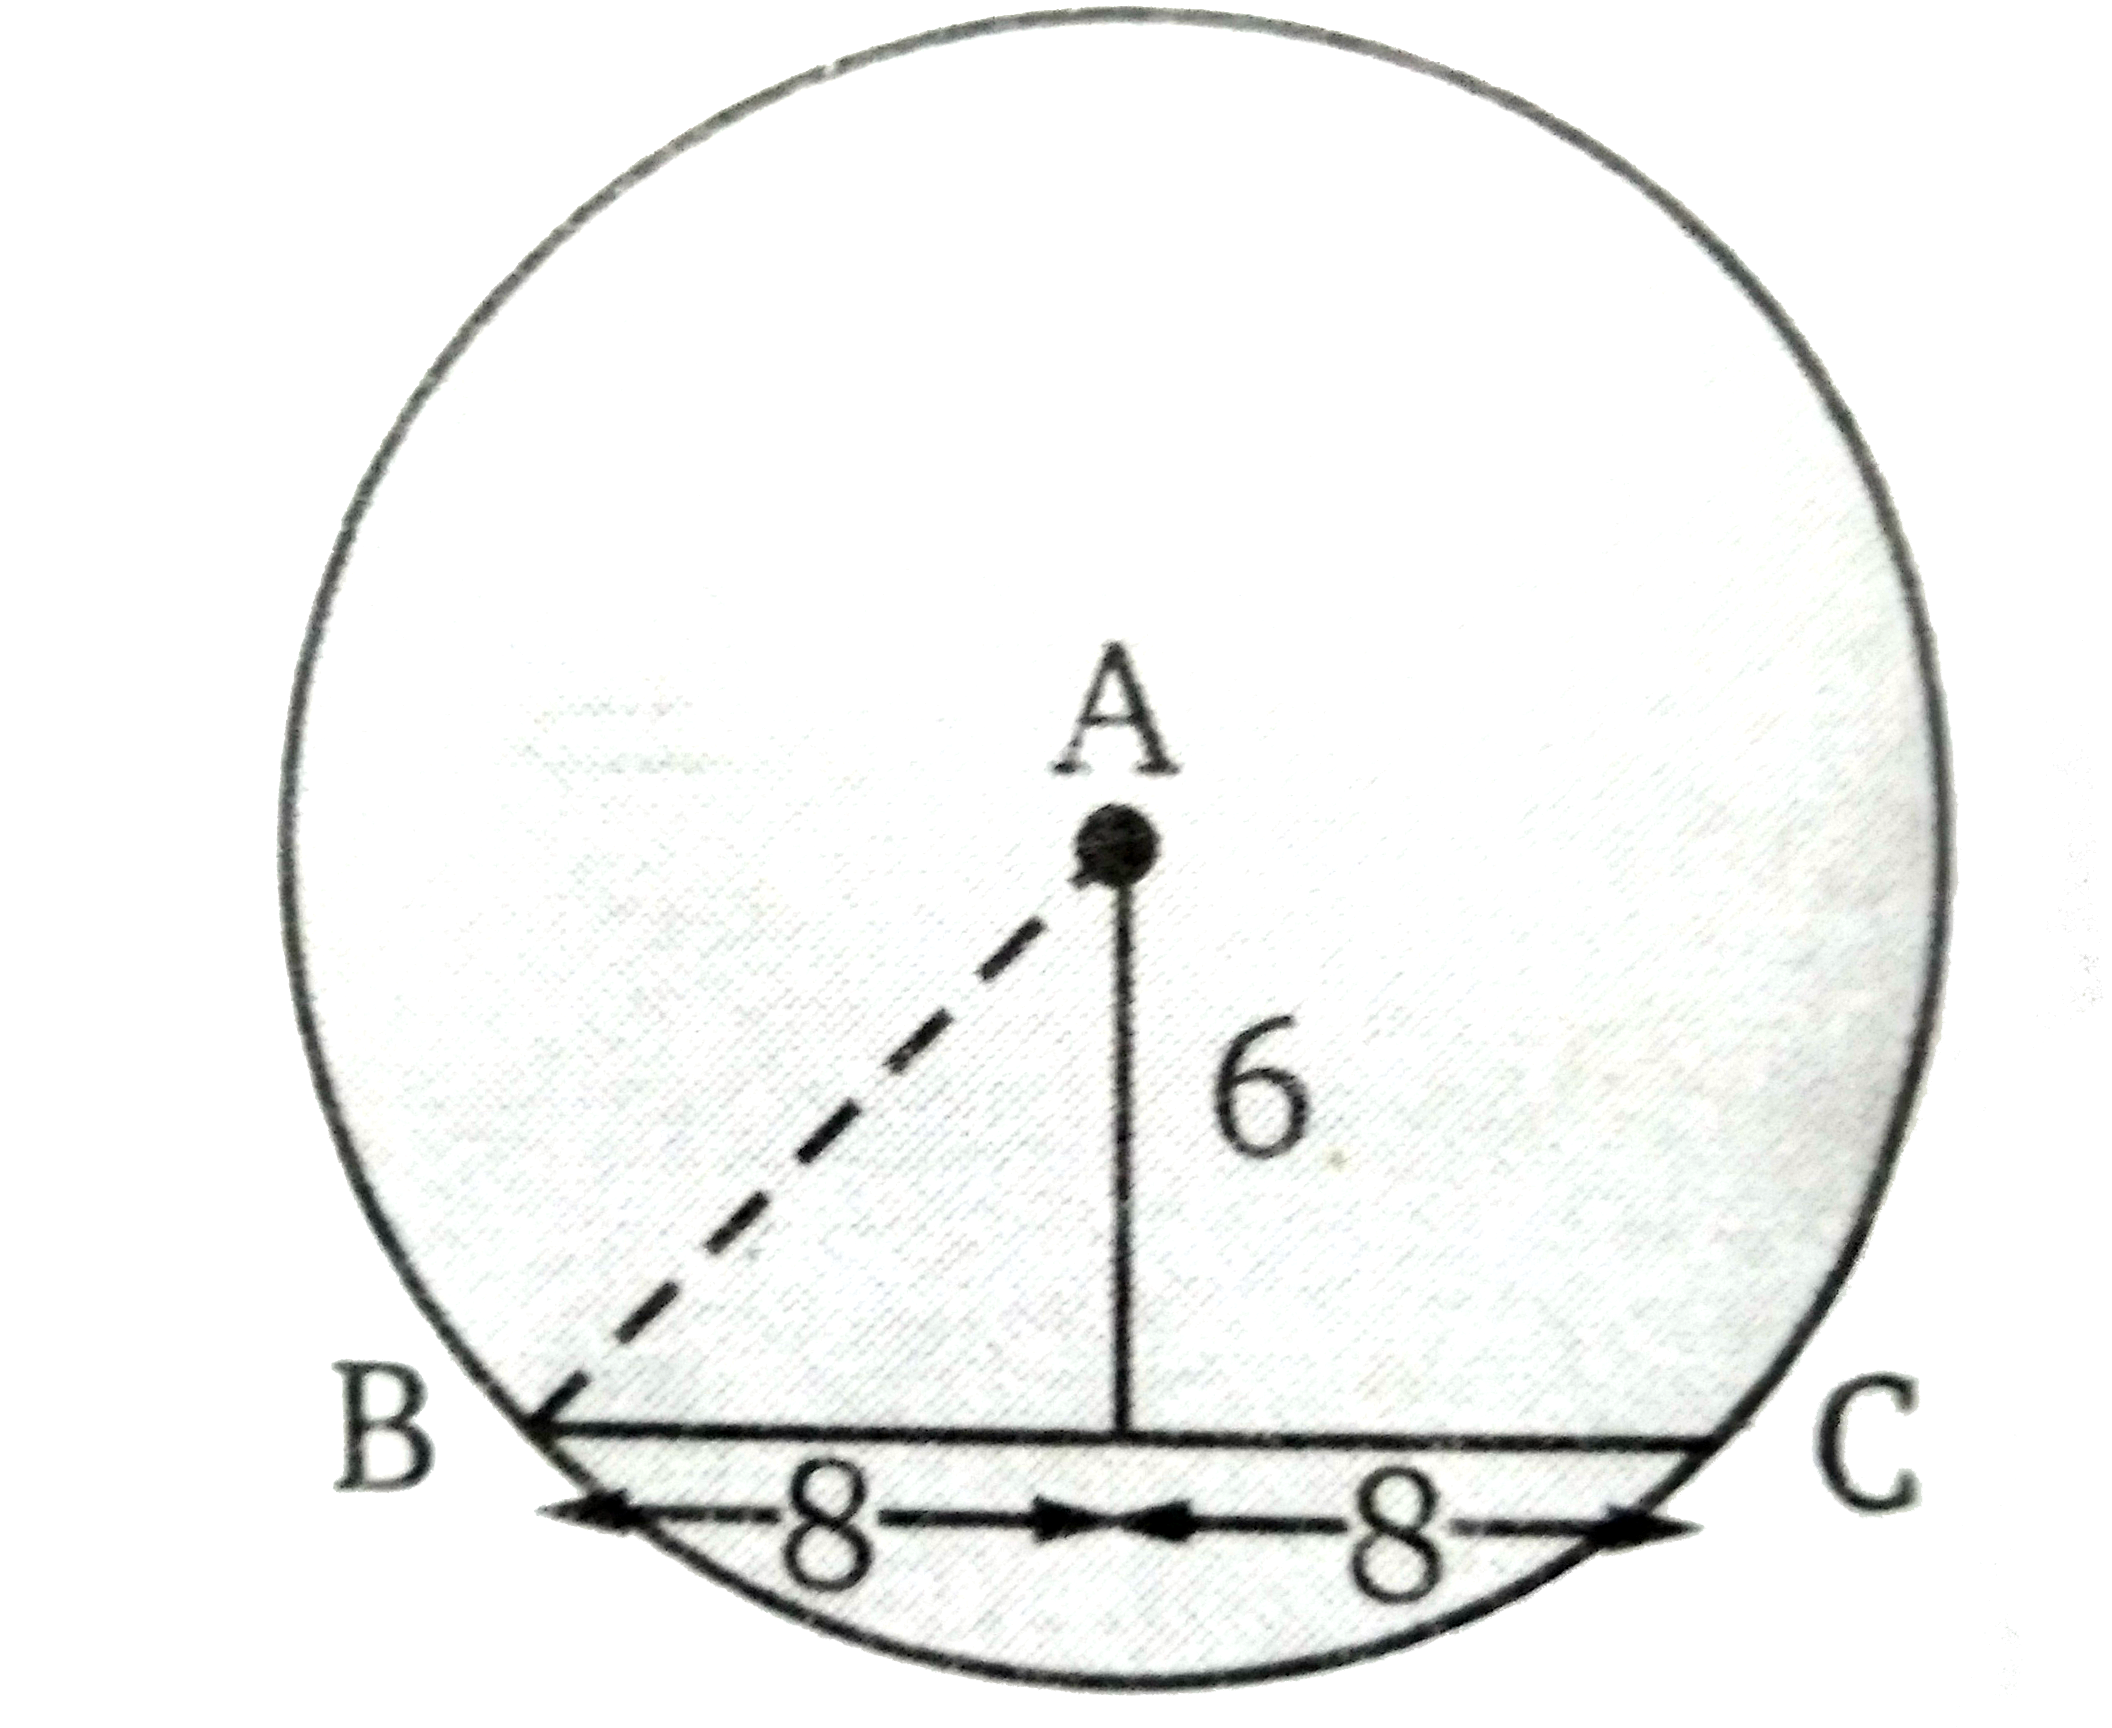 एक वृत्त की जीवा की लम्बाई 16 सेमी तथा वृत्त के केन्द्र से इसकी दूरी 6 सेमी है। तब वृत्त की त्रिज्या ज्ञात कीजिए।